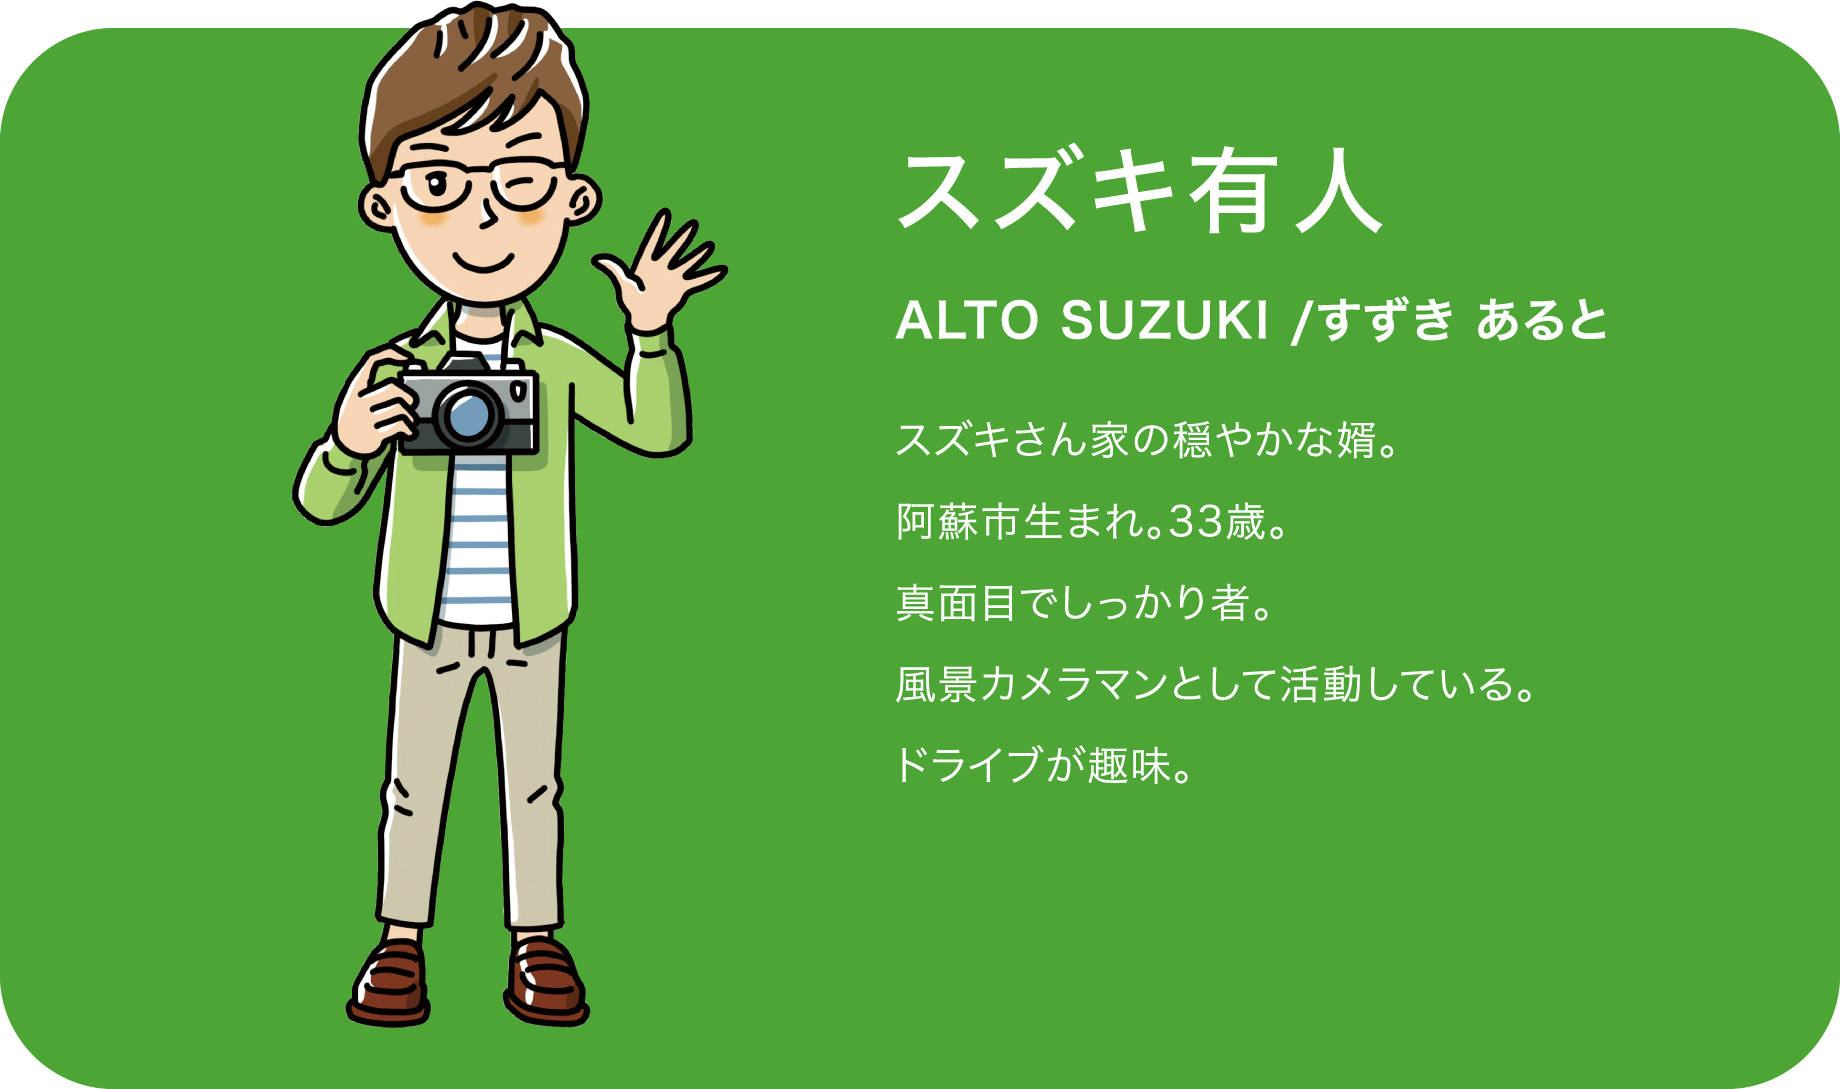 スズキ有人（ALTO SUZUKI /すずき あると）スズキさん家の穏やかな婿。阿蘇市生まれ。33歳。真面目でしっかり者。風景カメラマンとして活動している。ドライブが趣味。